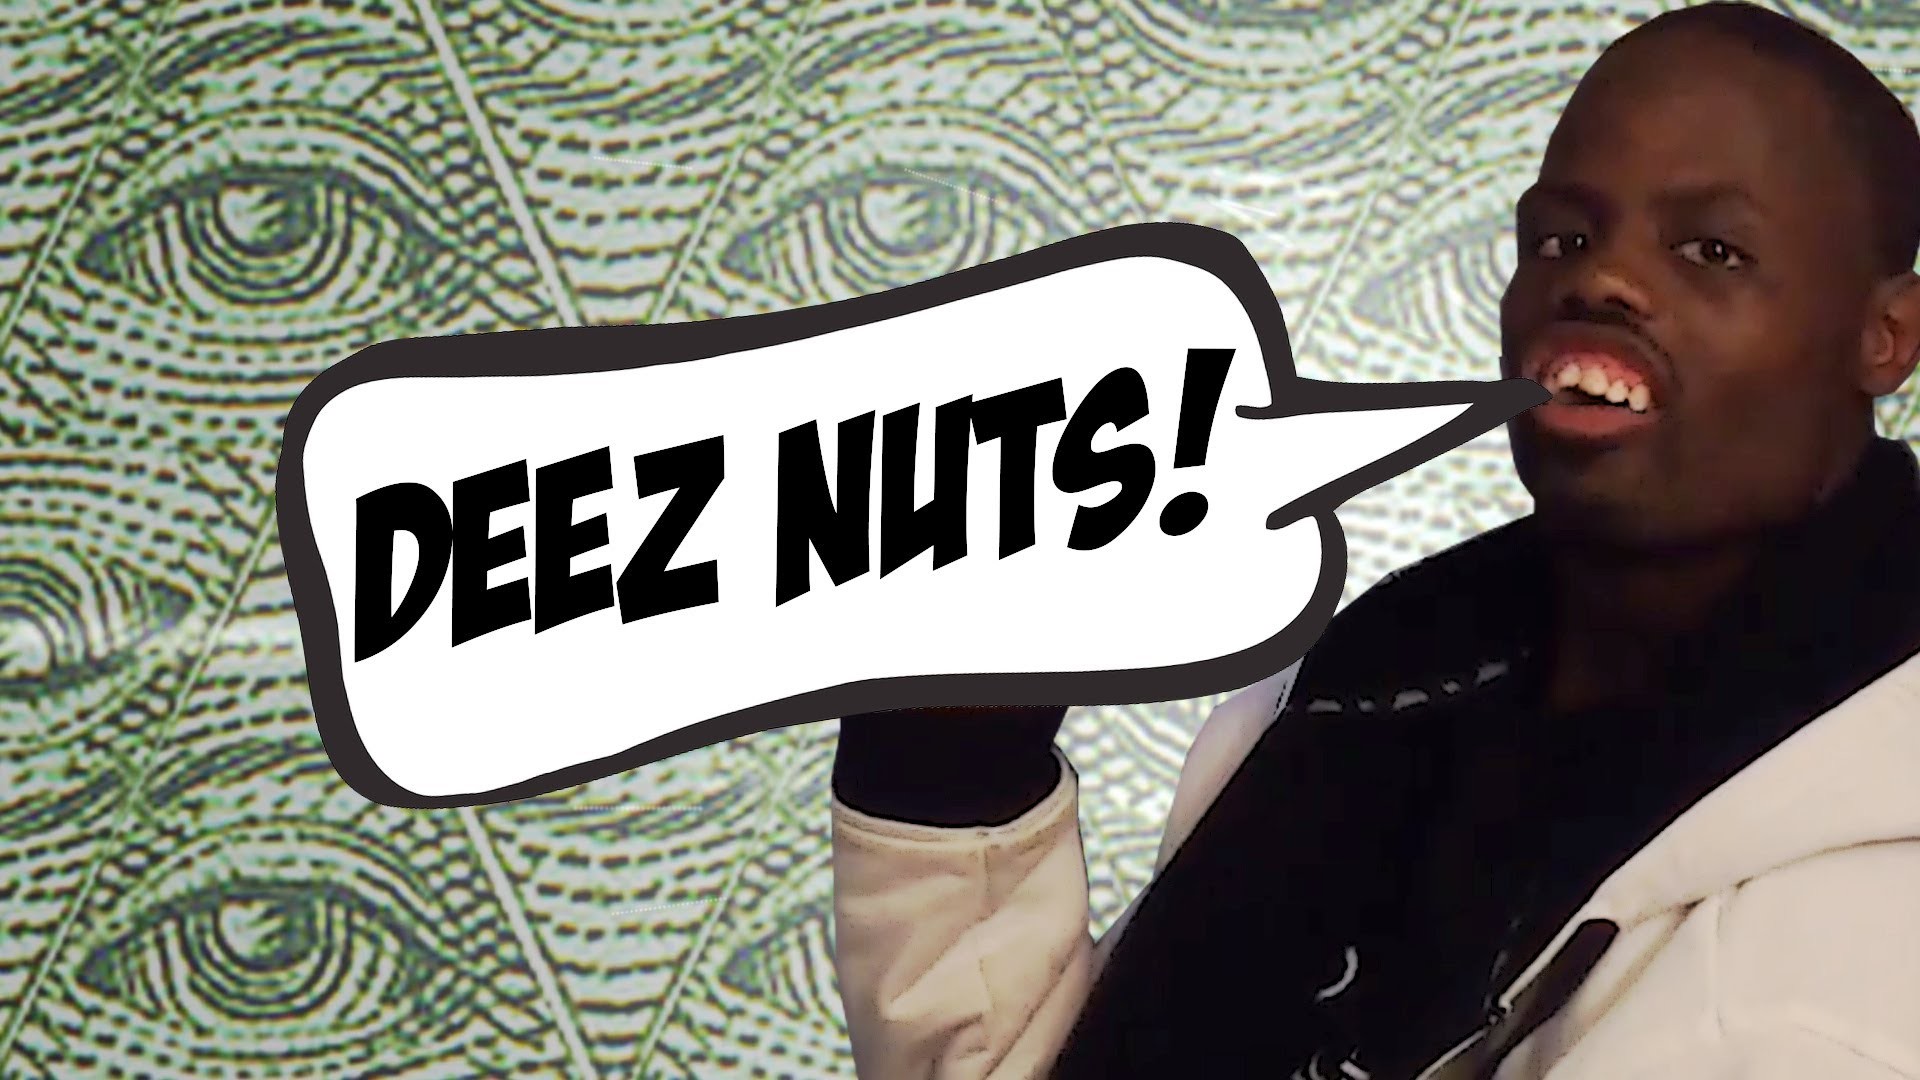 Deez Nuts Wallpaper Image